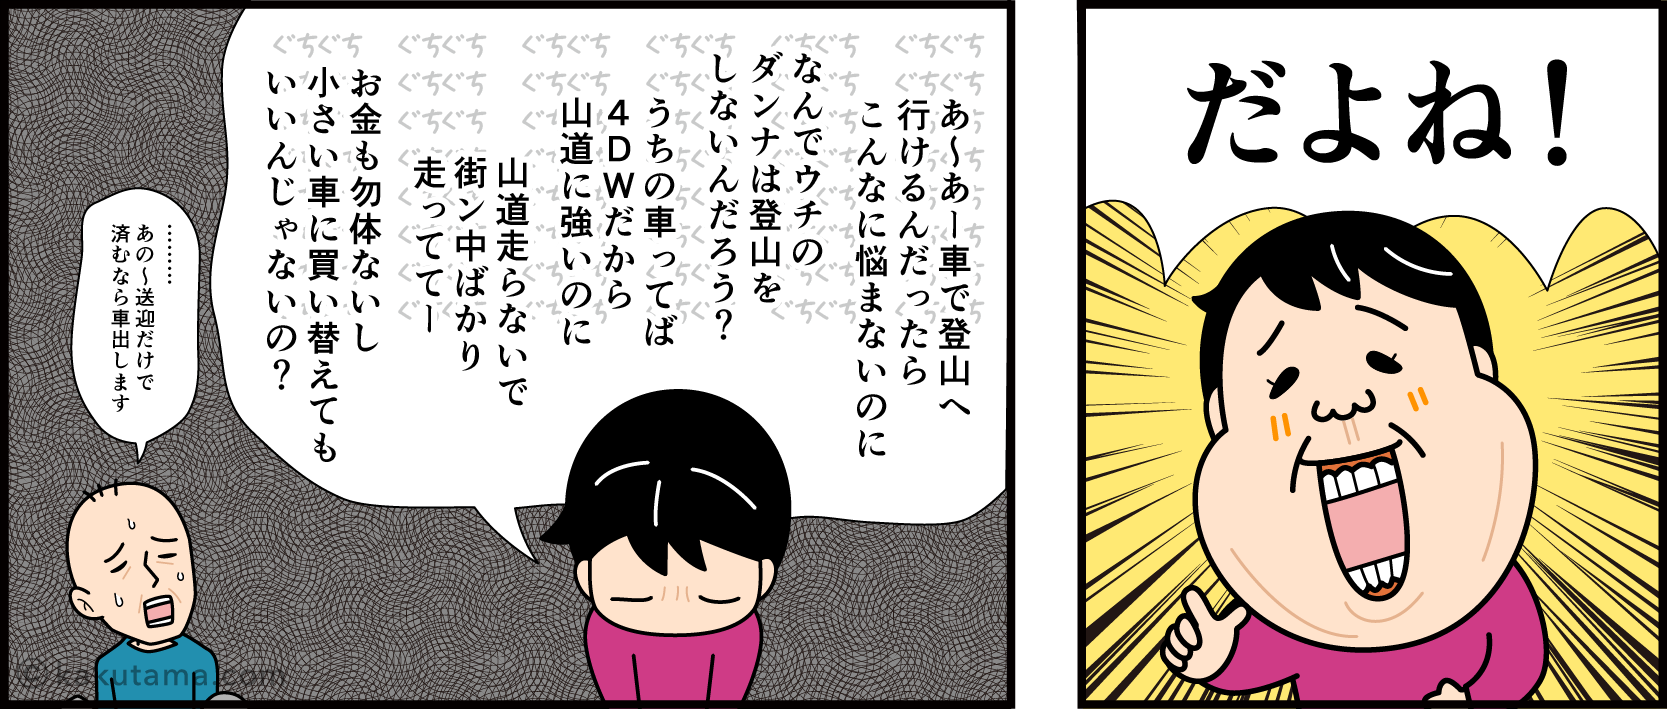 奥久慈男体山への公共機関でのアクセスの悪さに断念する登山者の漫画